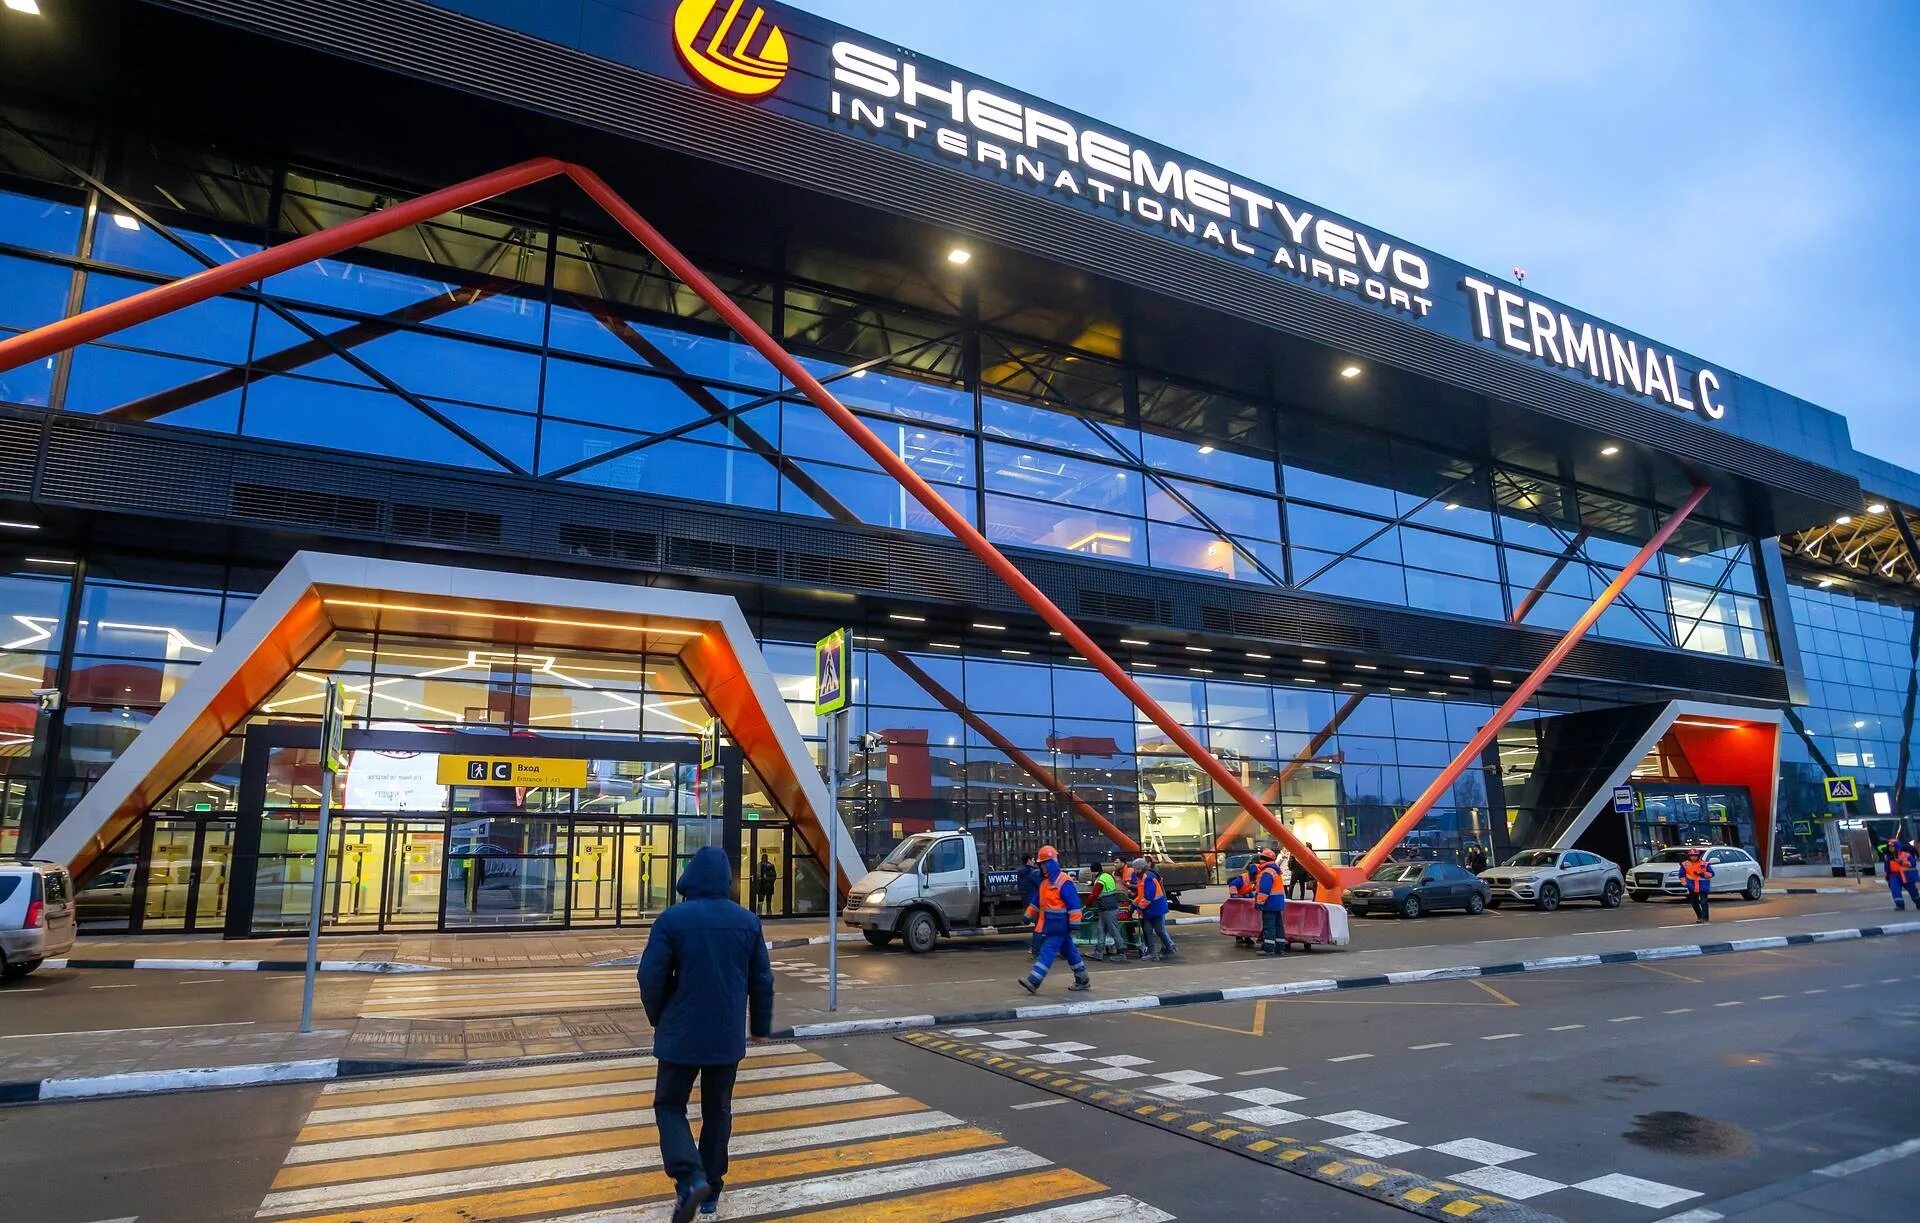 Аэропорт шереметьево терминал ц. Аэропорт Шереметьево терминал c. Международный аэропорт Шереметьево терминал b. Шереметьево новый терминал. Москва аэропорт Шереметьево терминал в.